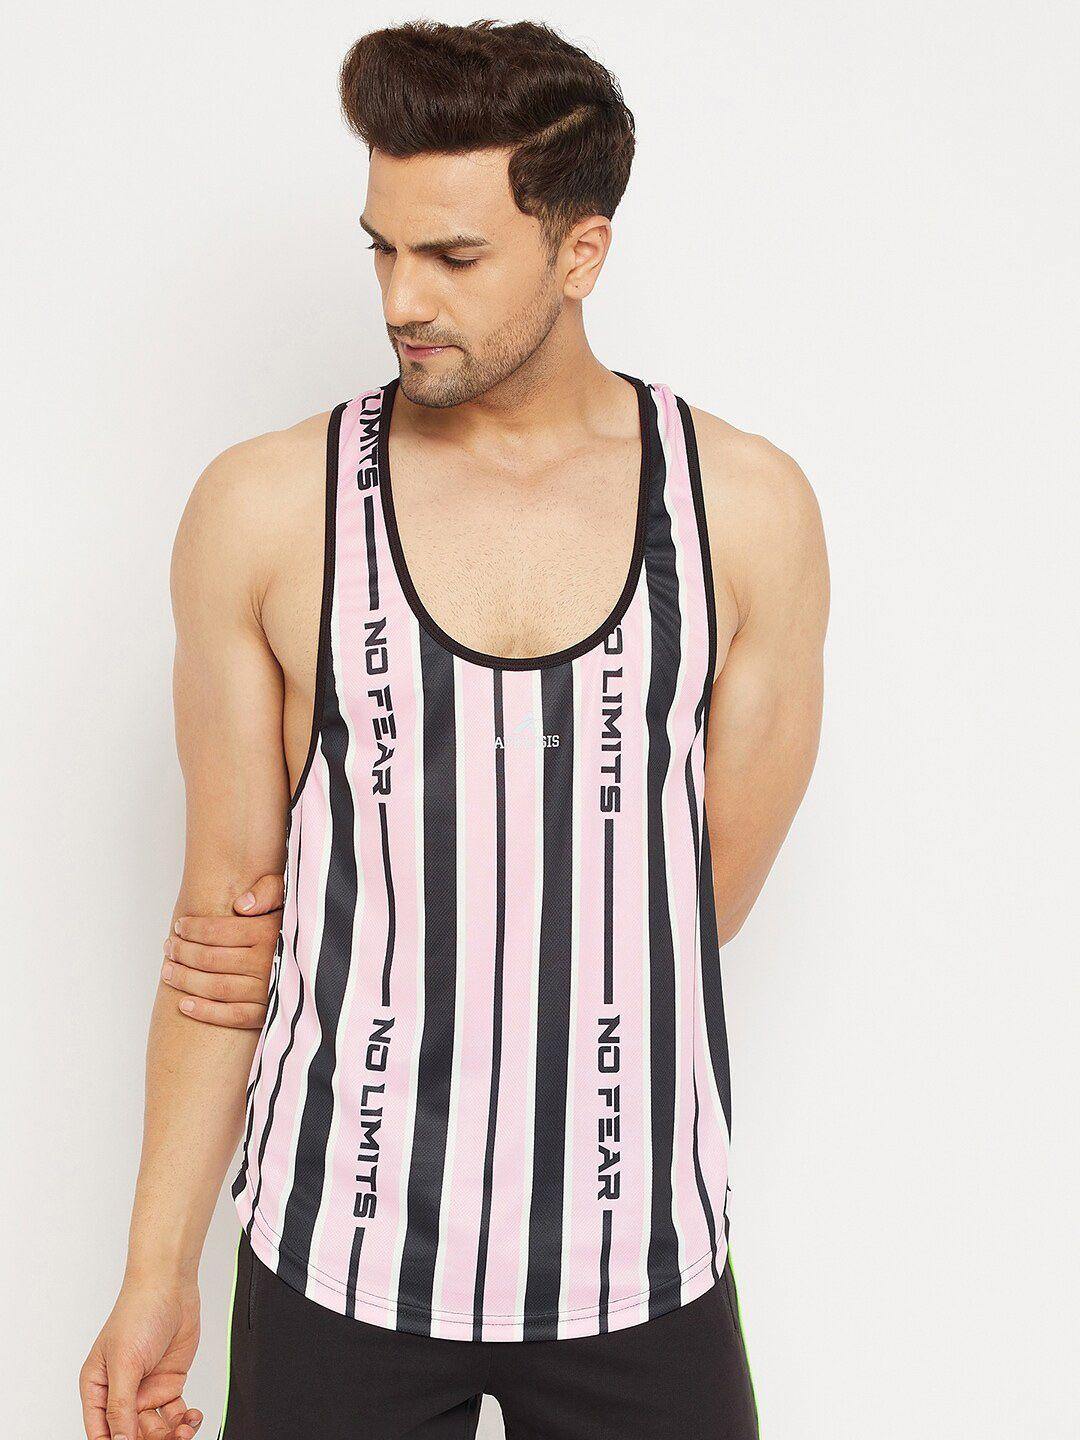 athlisis men pink striped gym t-shirt